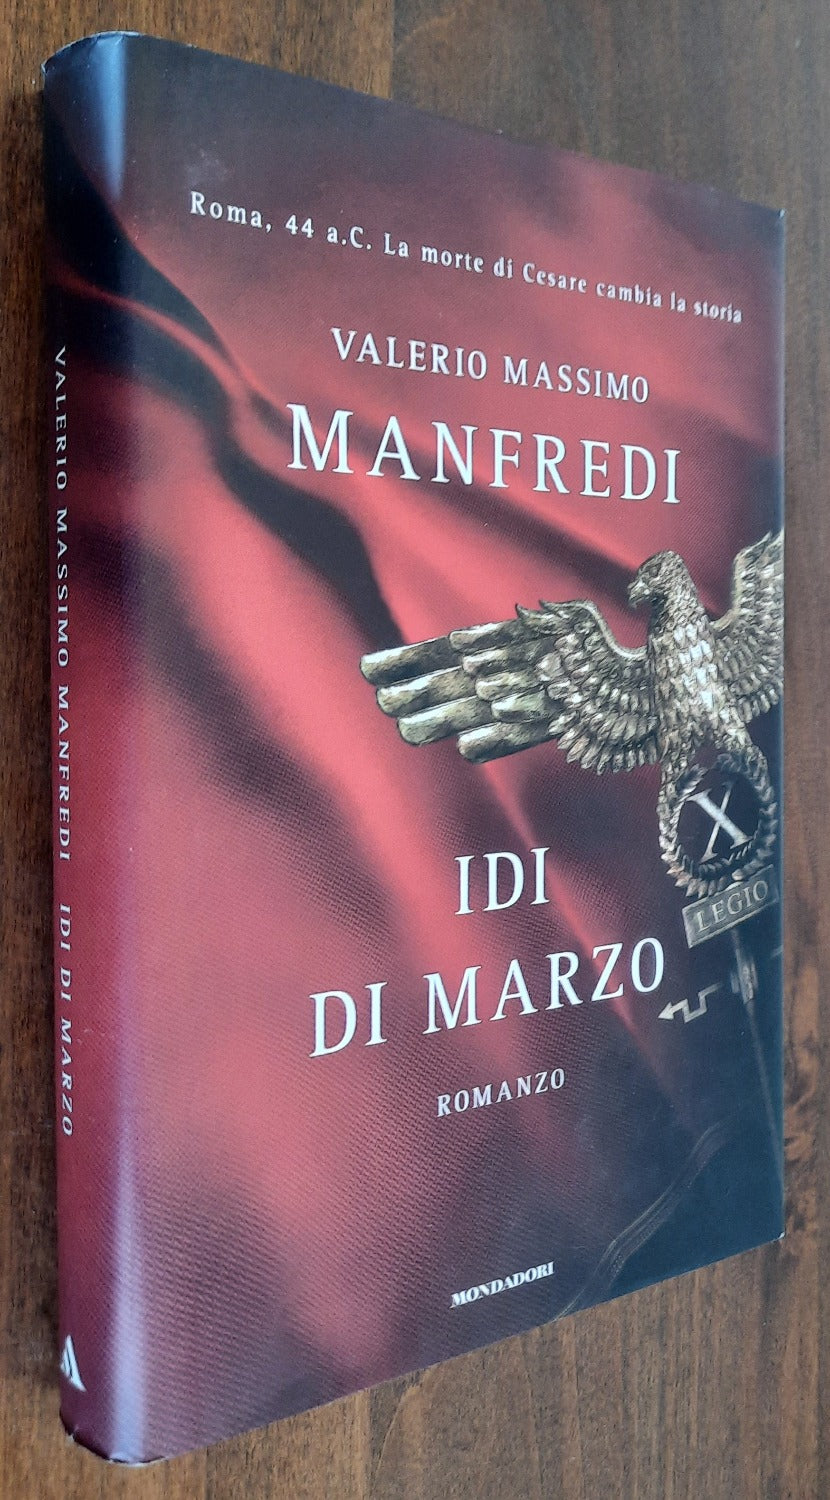 Idi di marzo - Mondadori - 2008